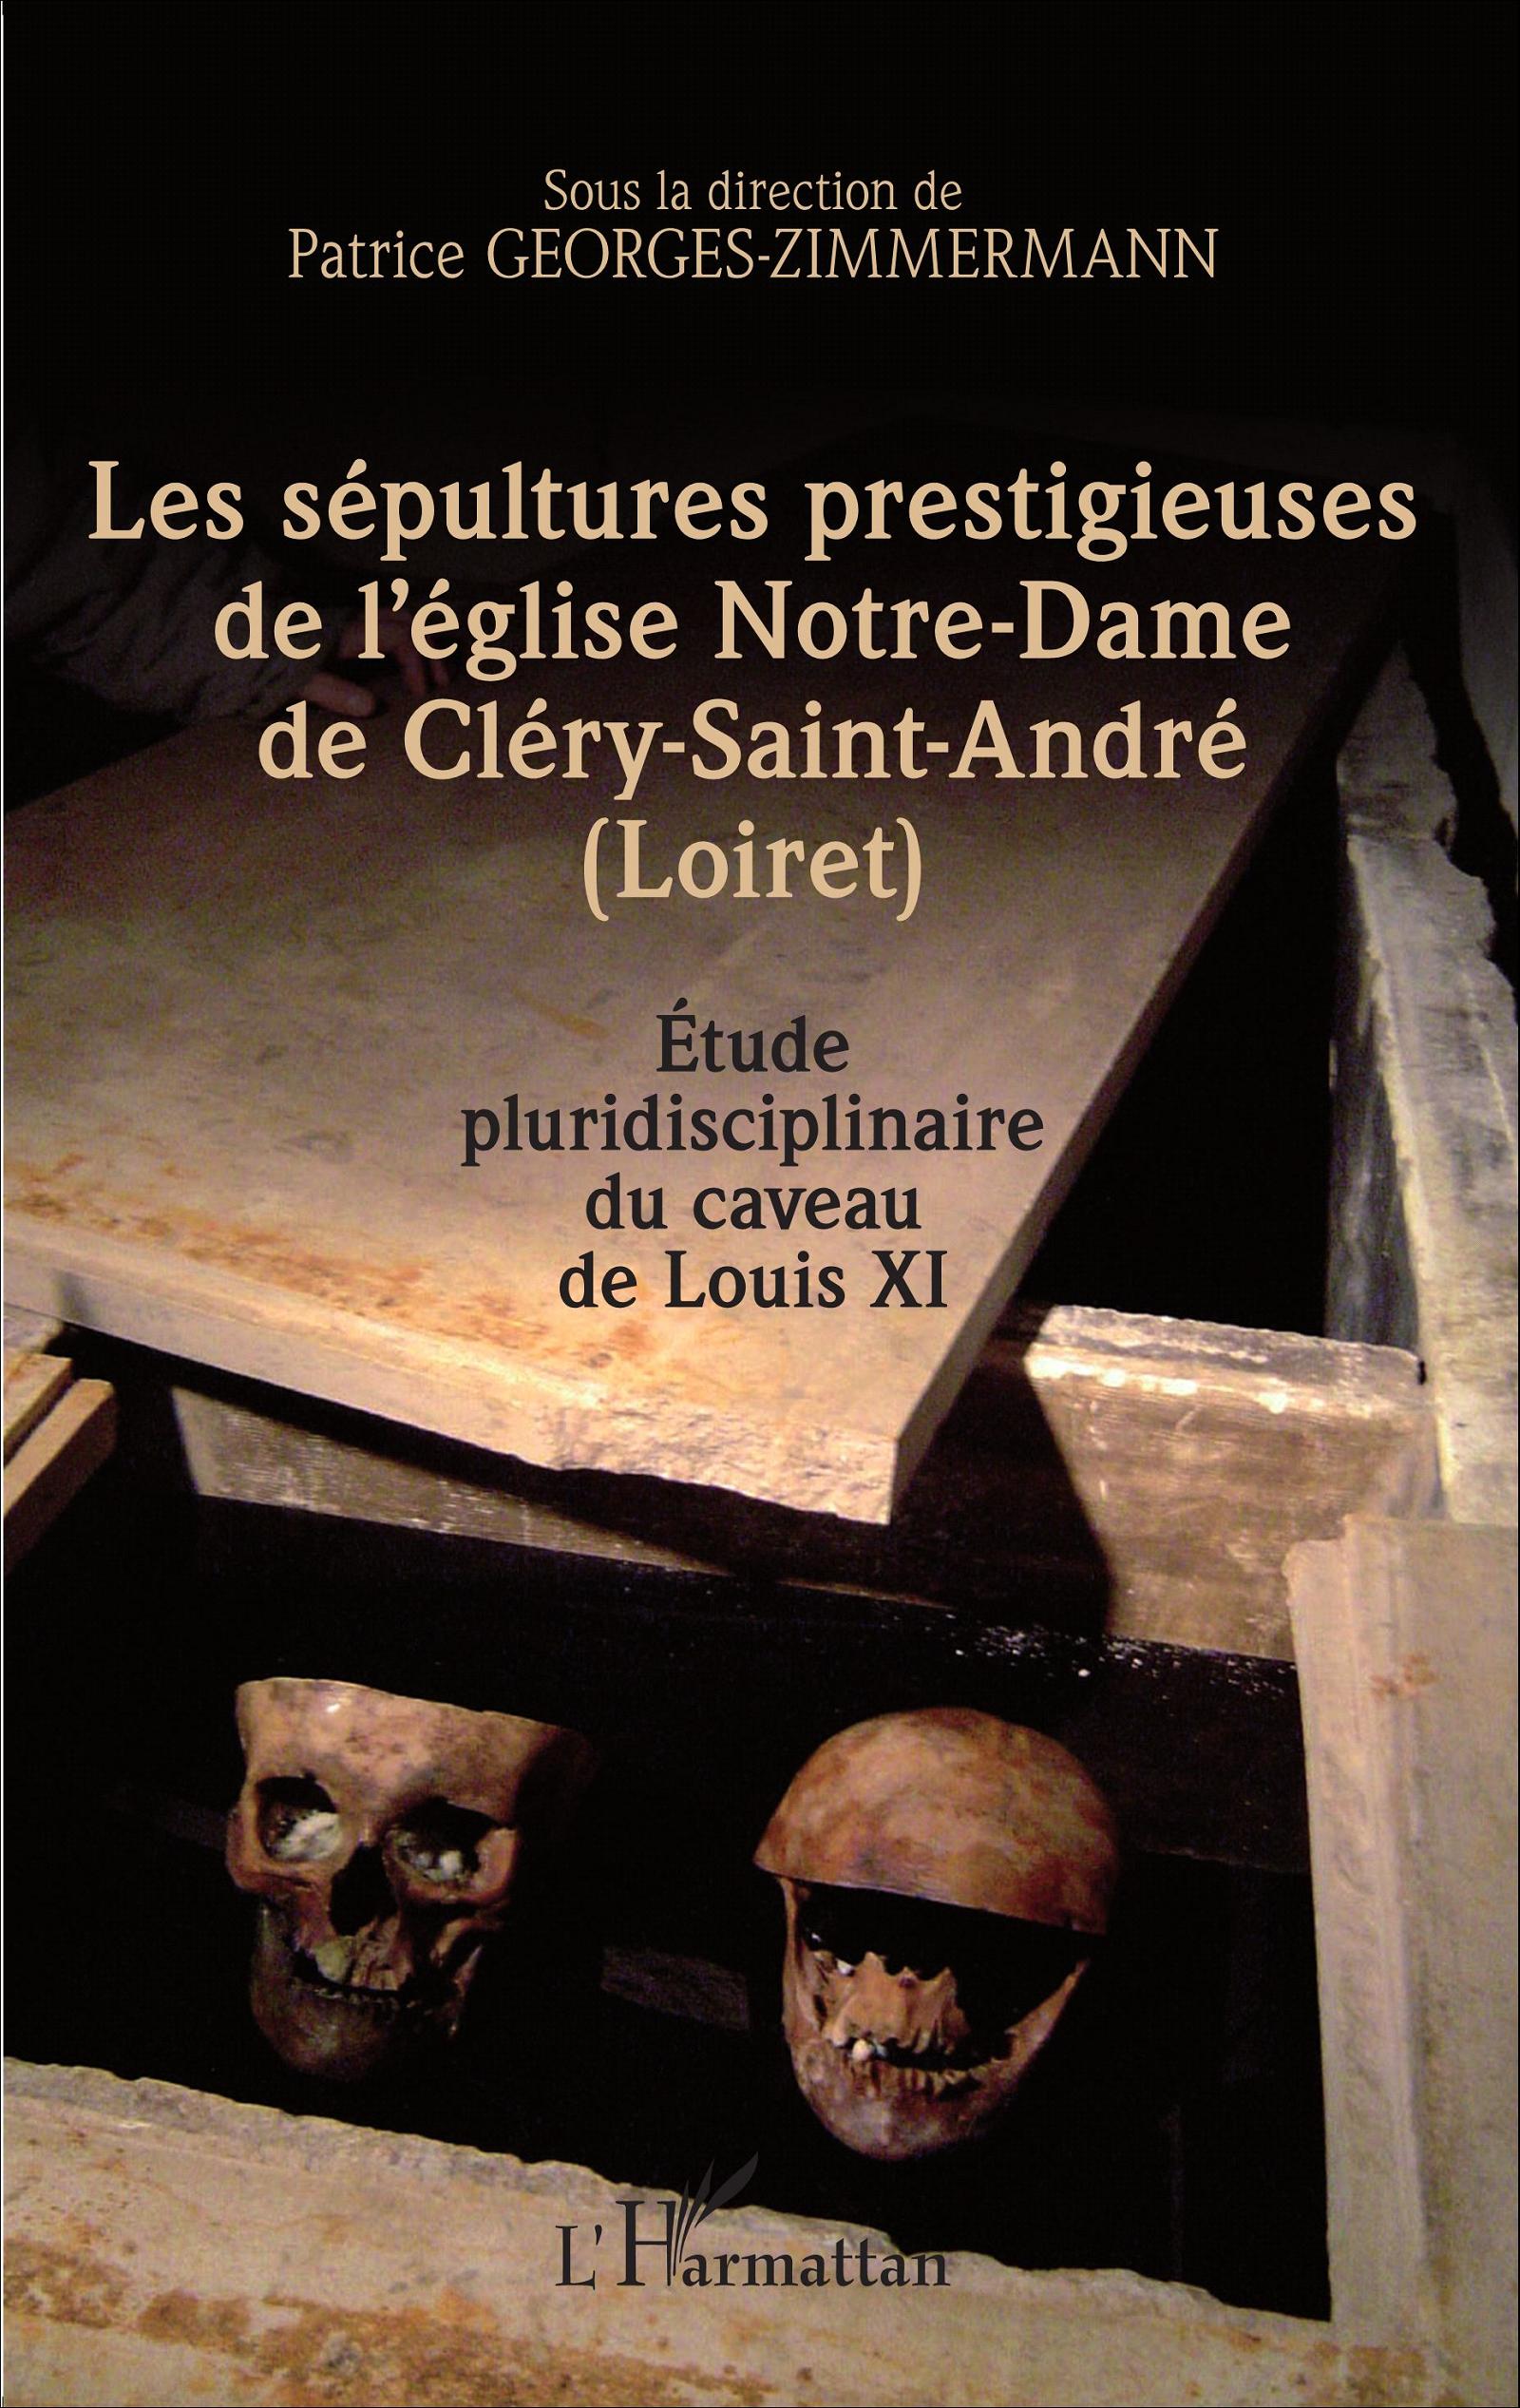 Les sépultures prestigieuses de l'église Notre-Dame de Cléry-saint-André (Loiret), 2015, 386 p.